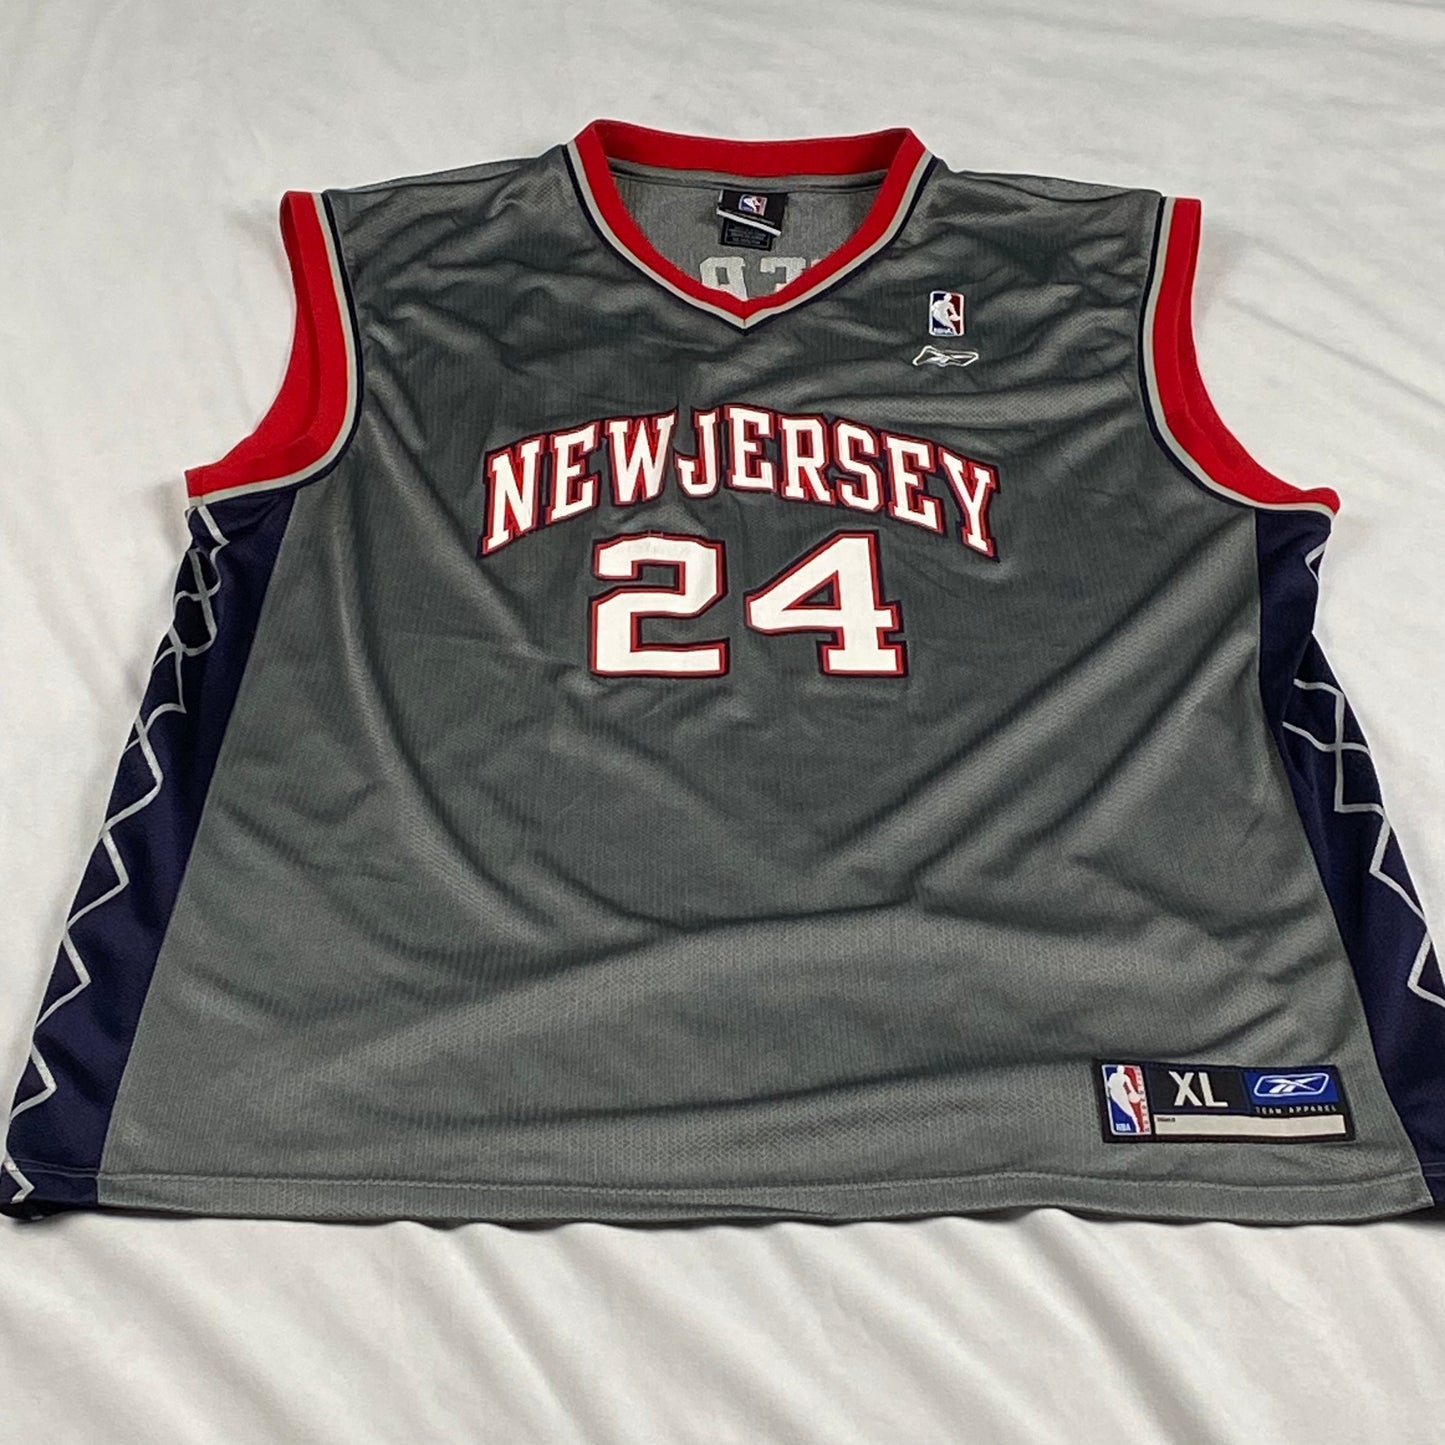 New Jersey Nets Richard Jefferson Reebok Replica NBA Basketball Jersey